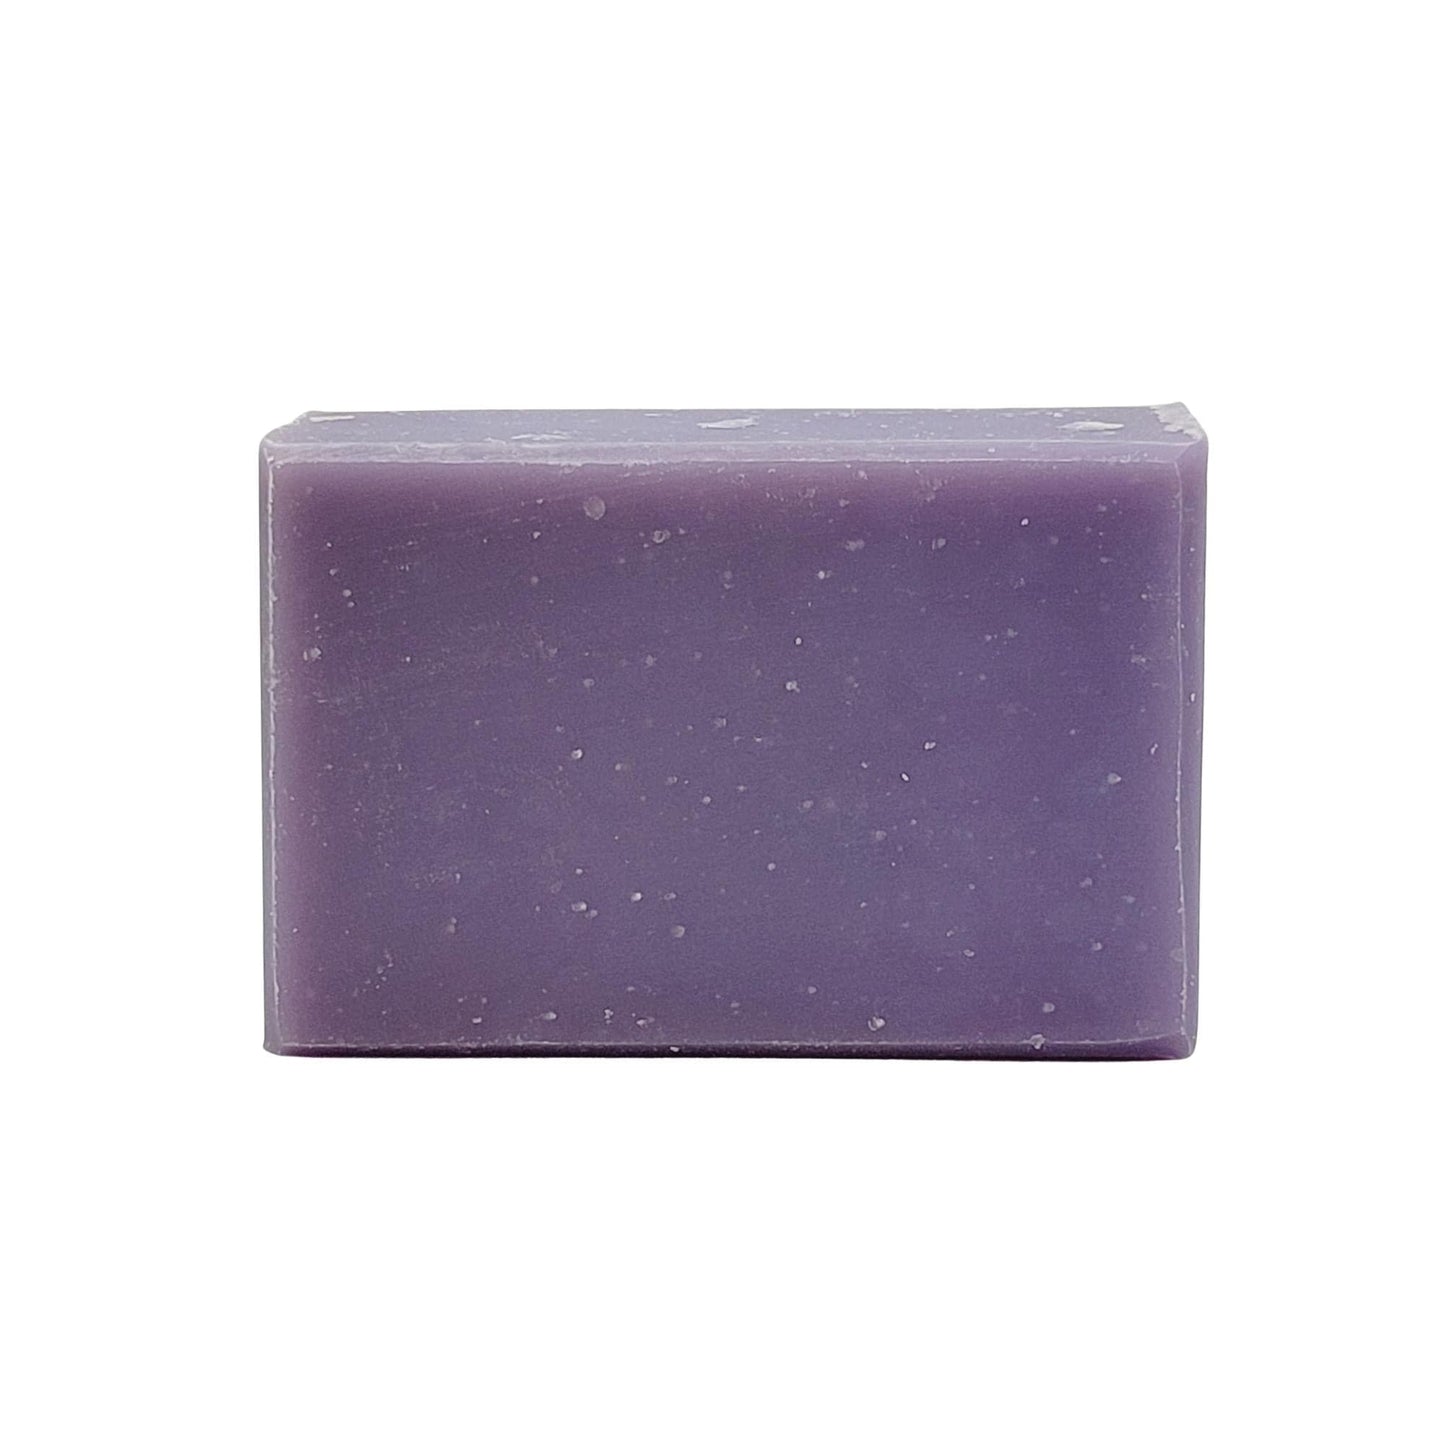 Lavender Goats Milk Soap With Shea Butter | 5 oz | Steel & Saffron - Steel & Saffron Bath Boutique Inc.